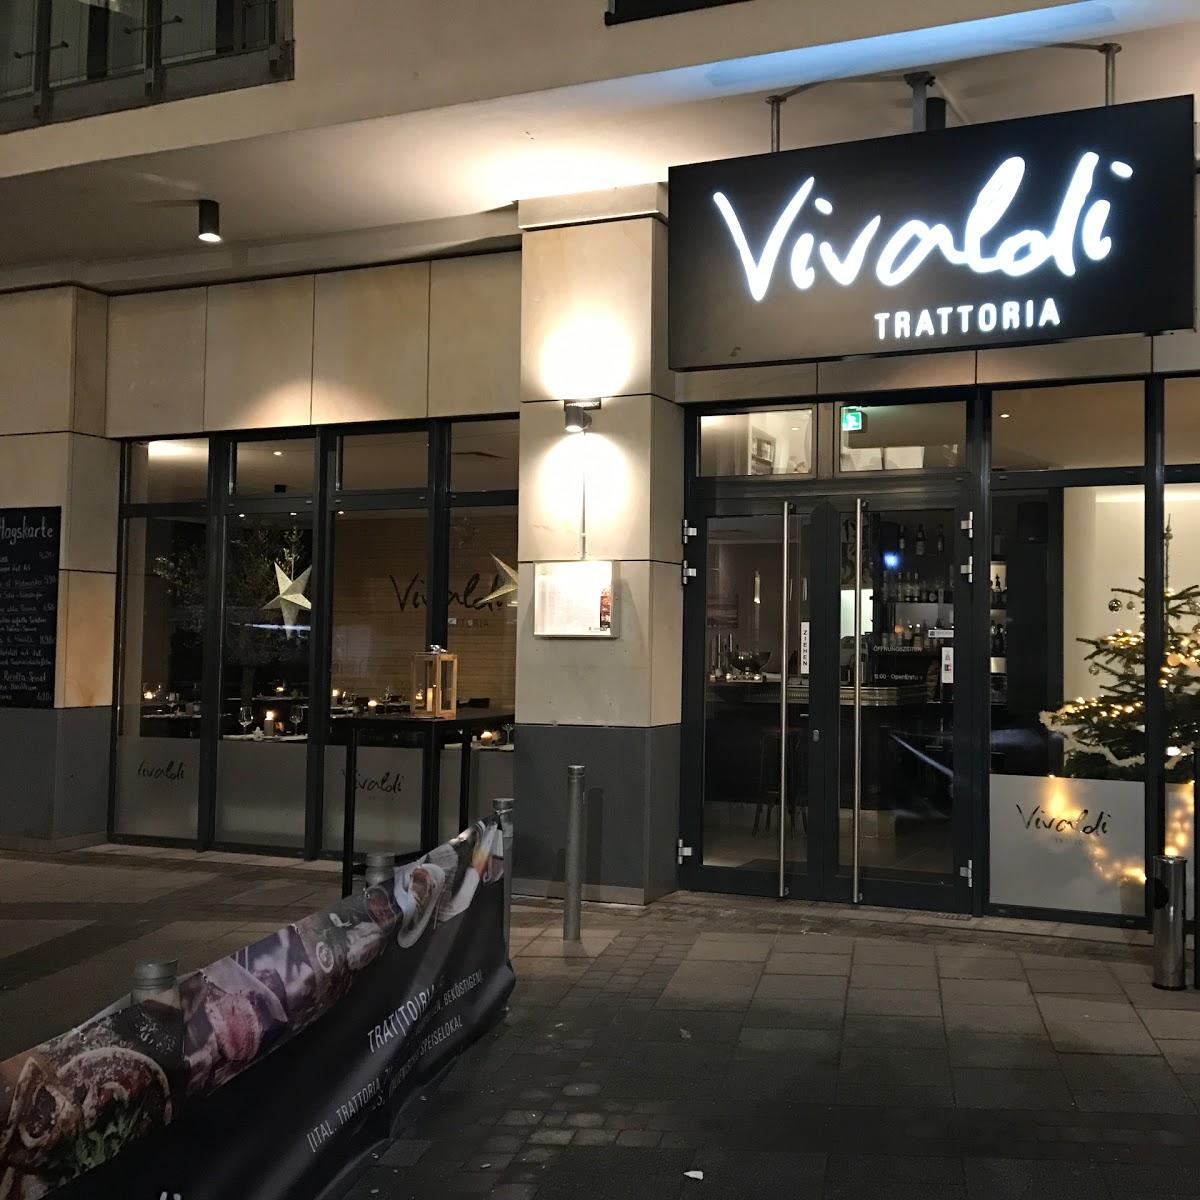 Restaurant "Vivaldi Trattoria" in  Bielefeld